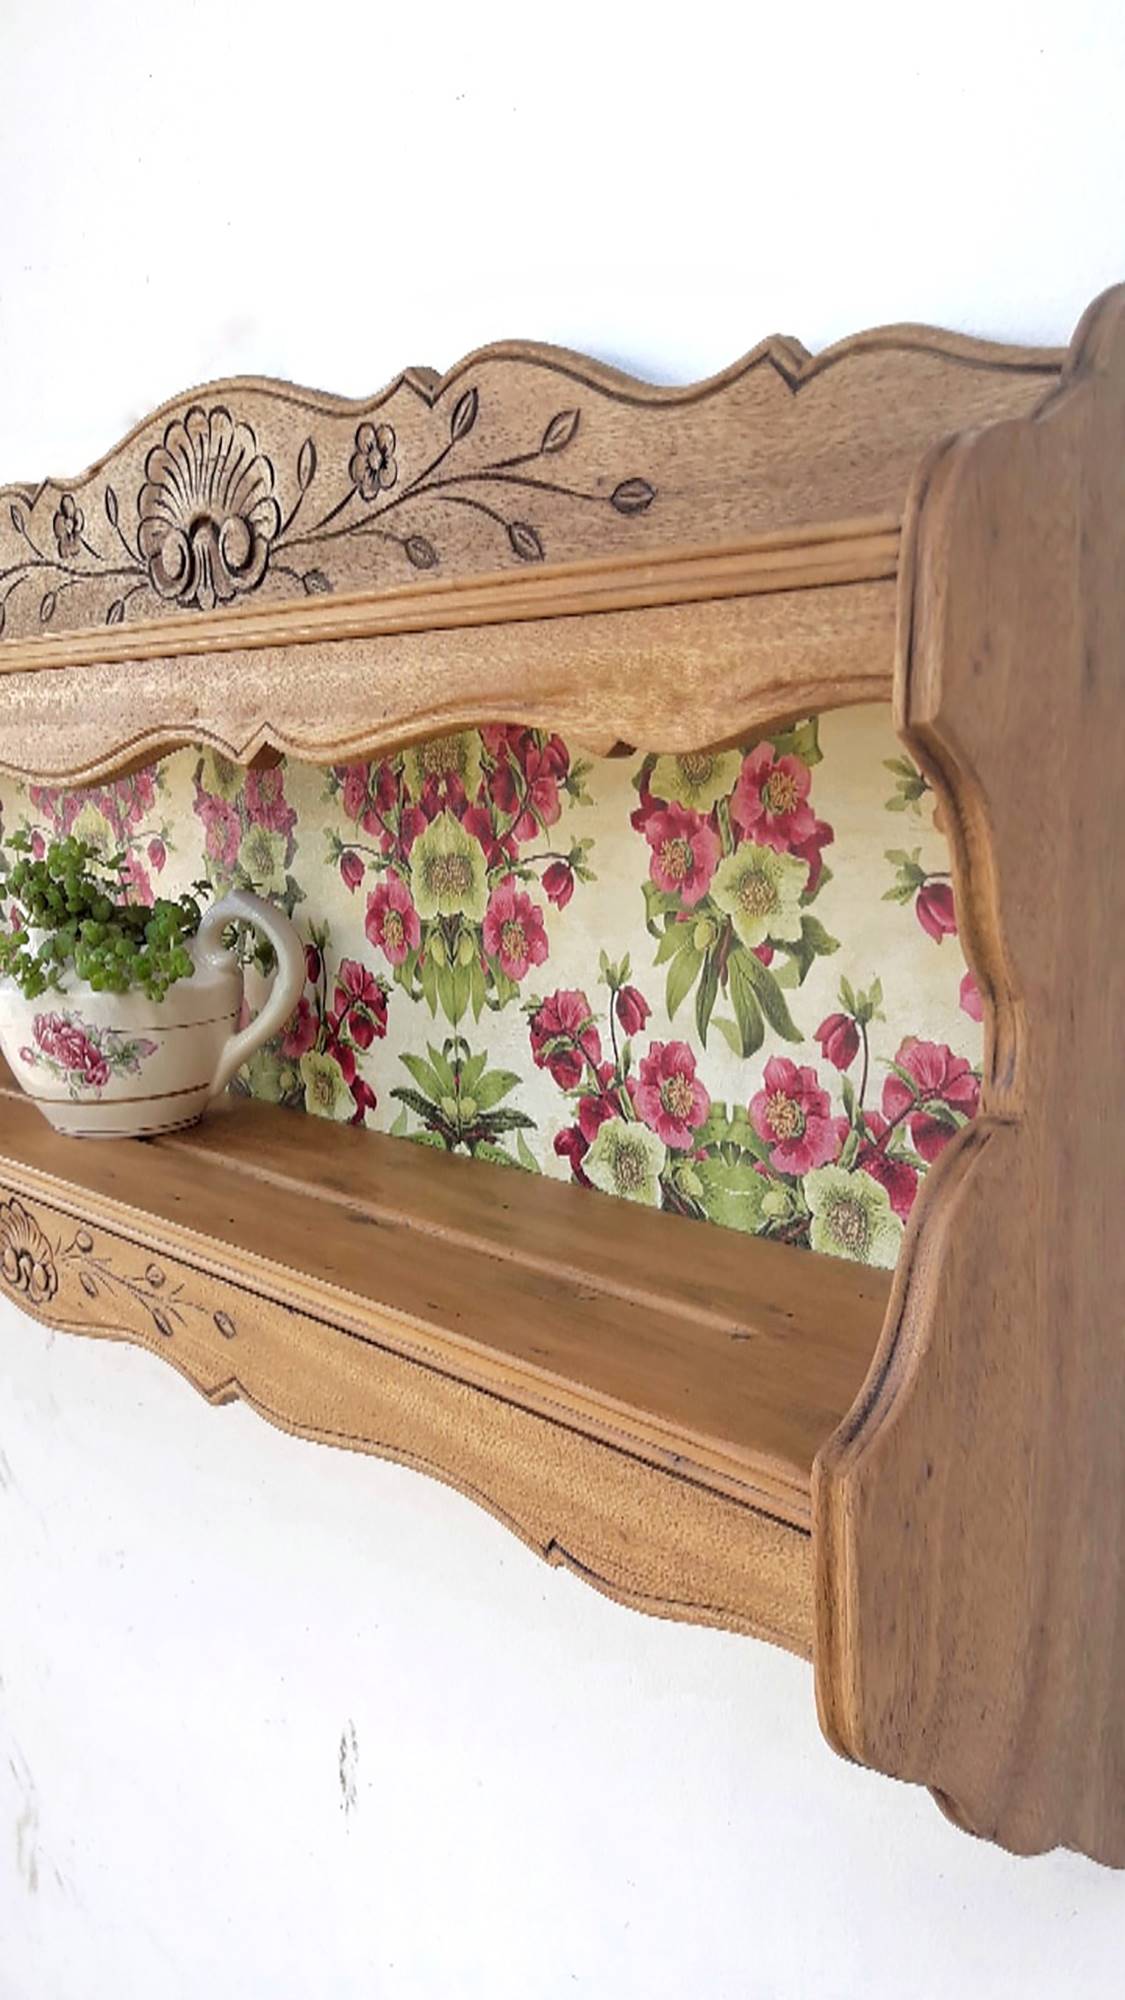 Repisa antigua de madera decorada con papel pintado floral